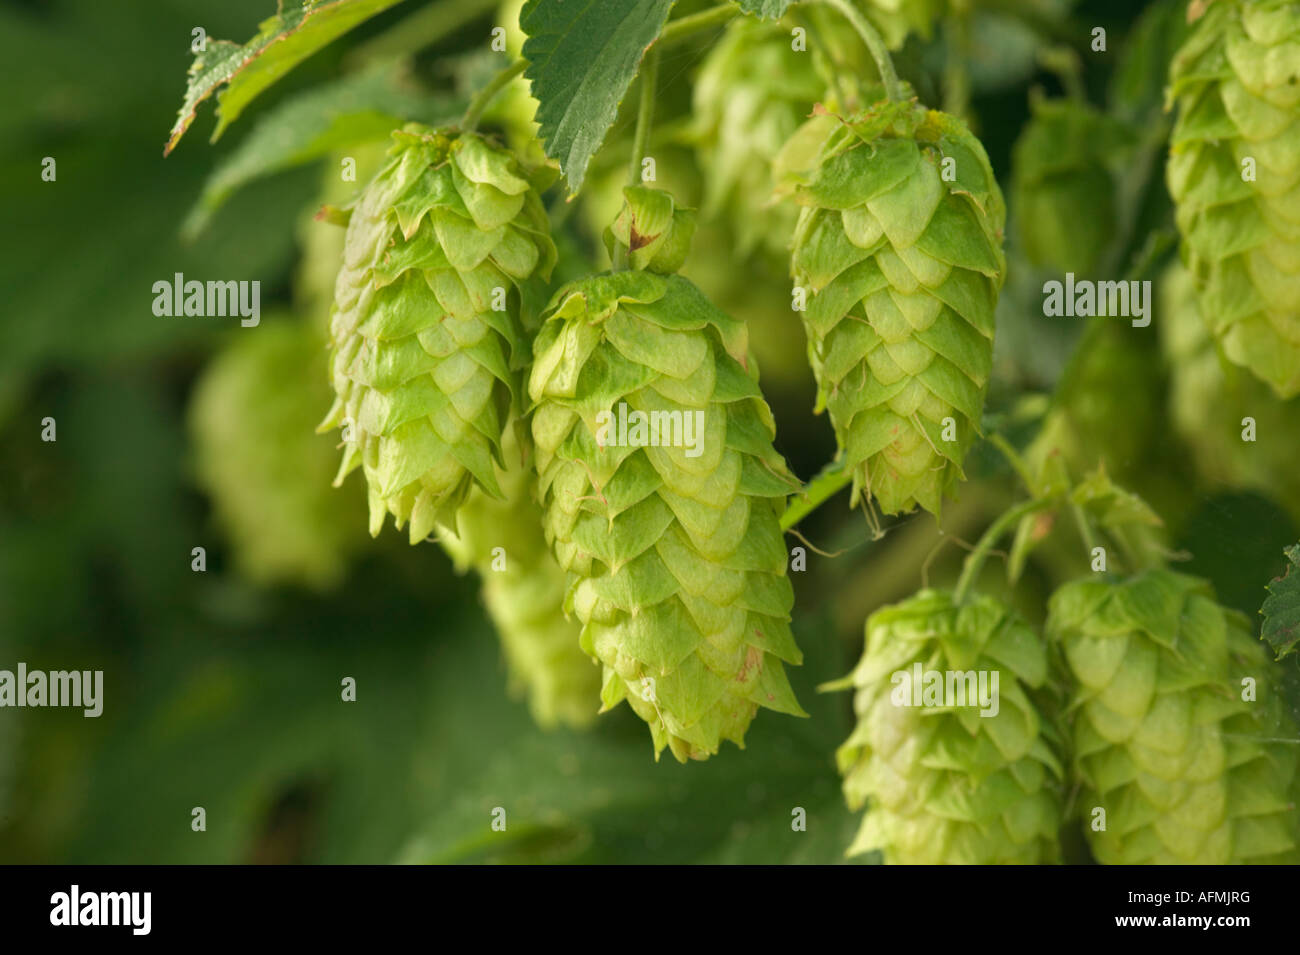 hop cones on vine. Stock Photo